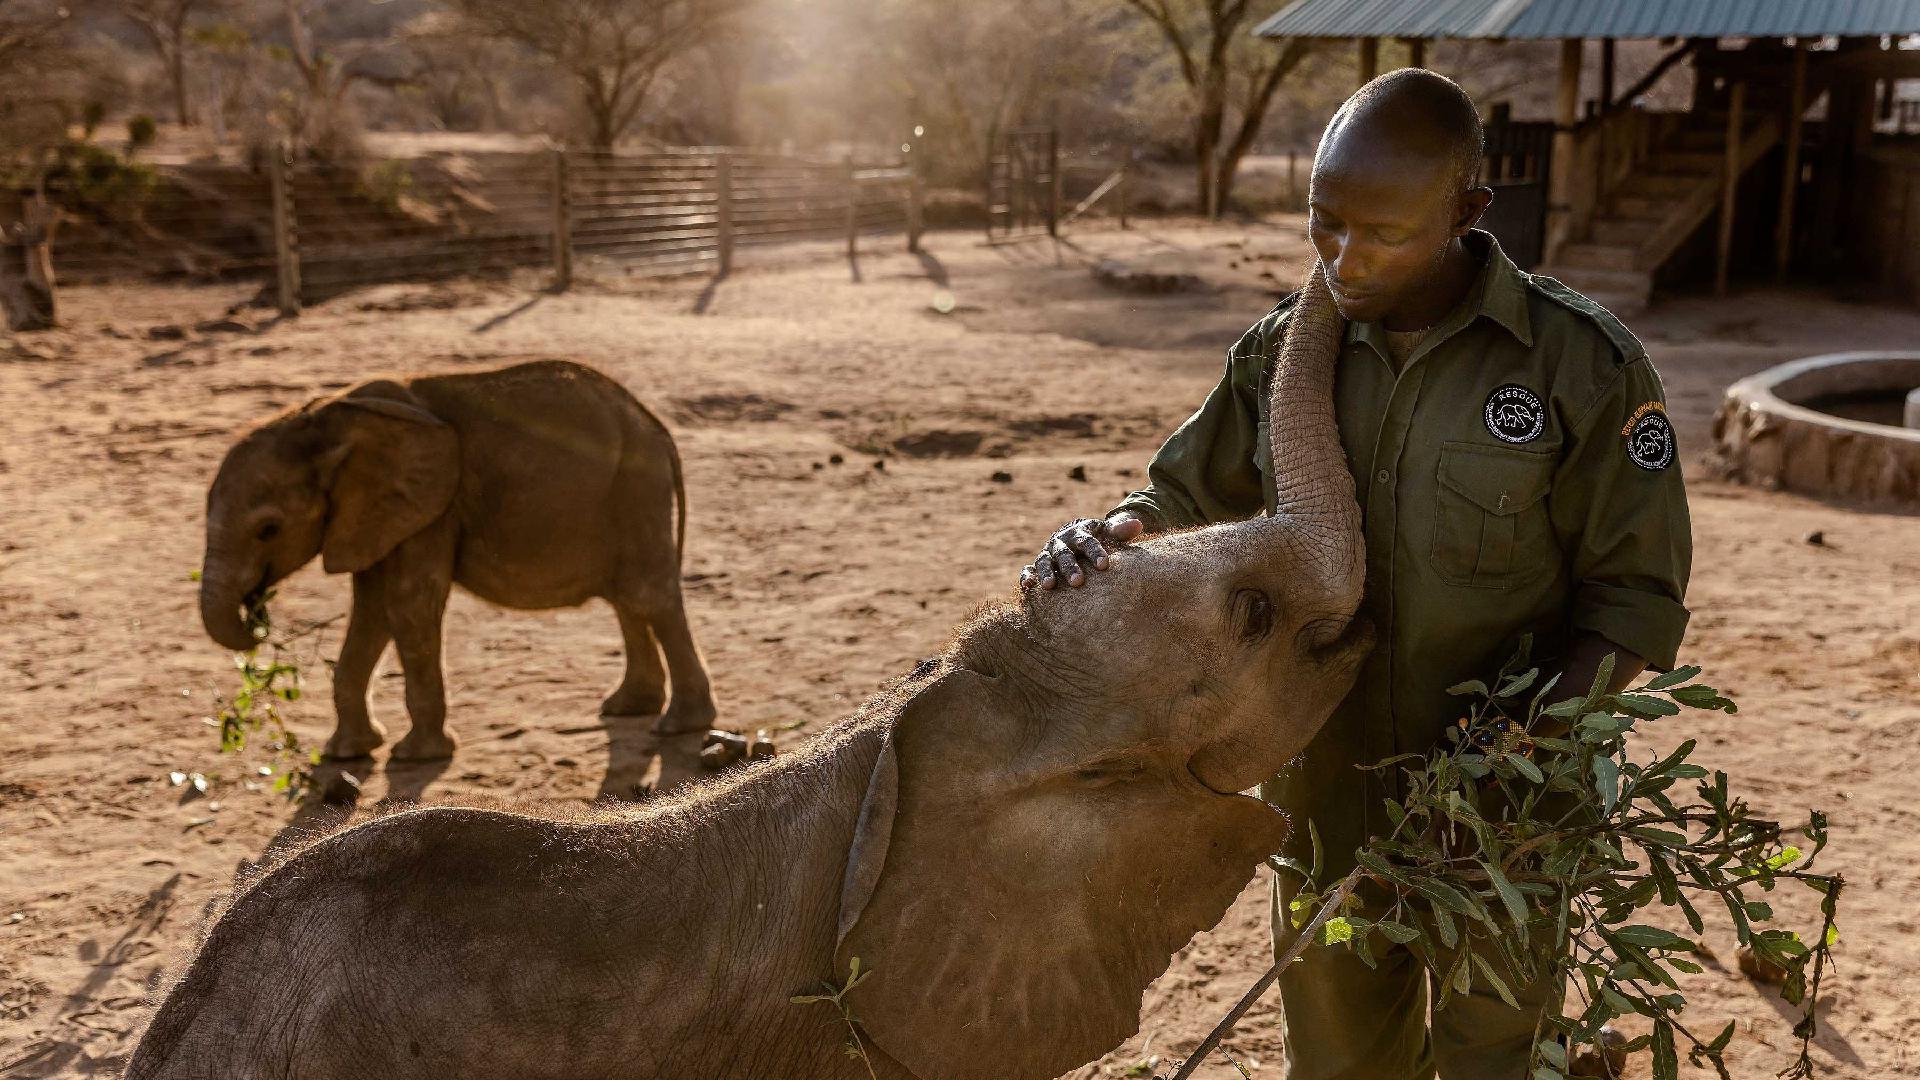 WWF: A generation of elephants died in Kenya drought - CGTN